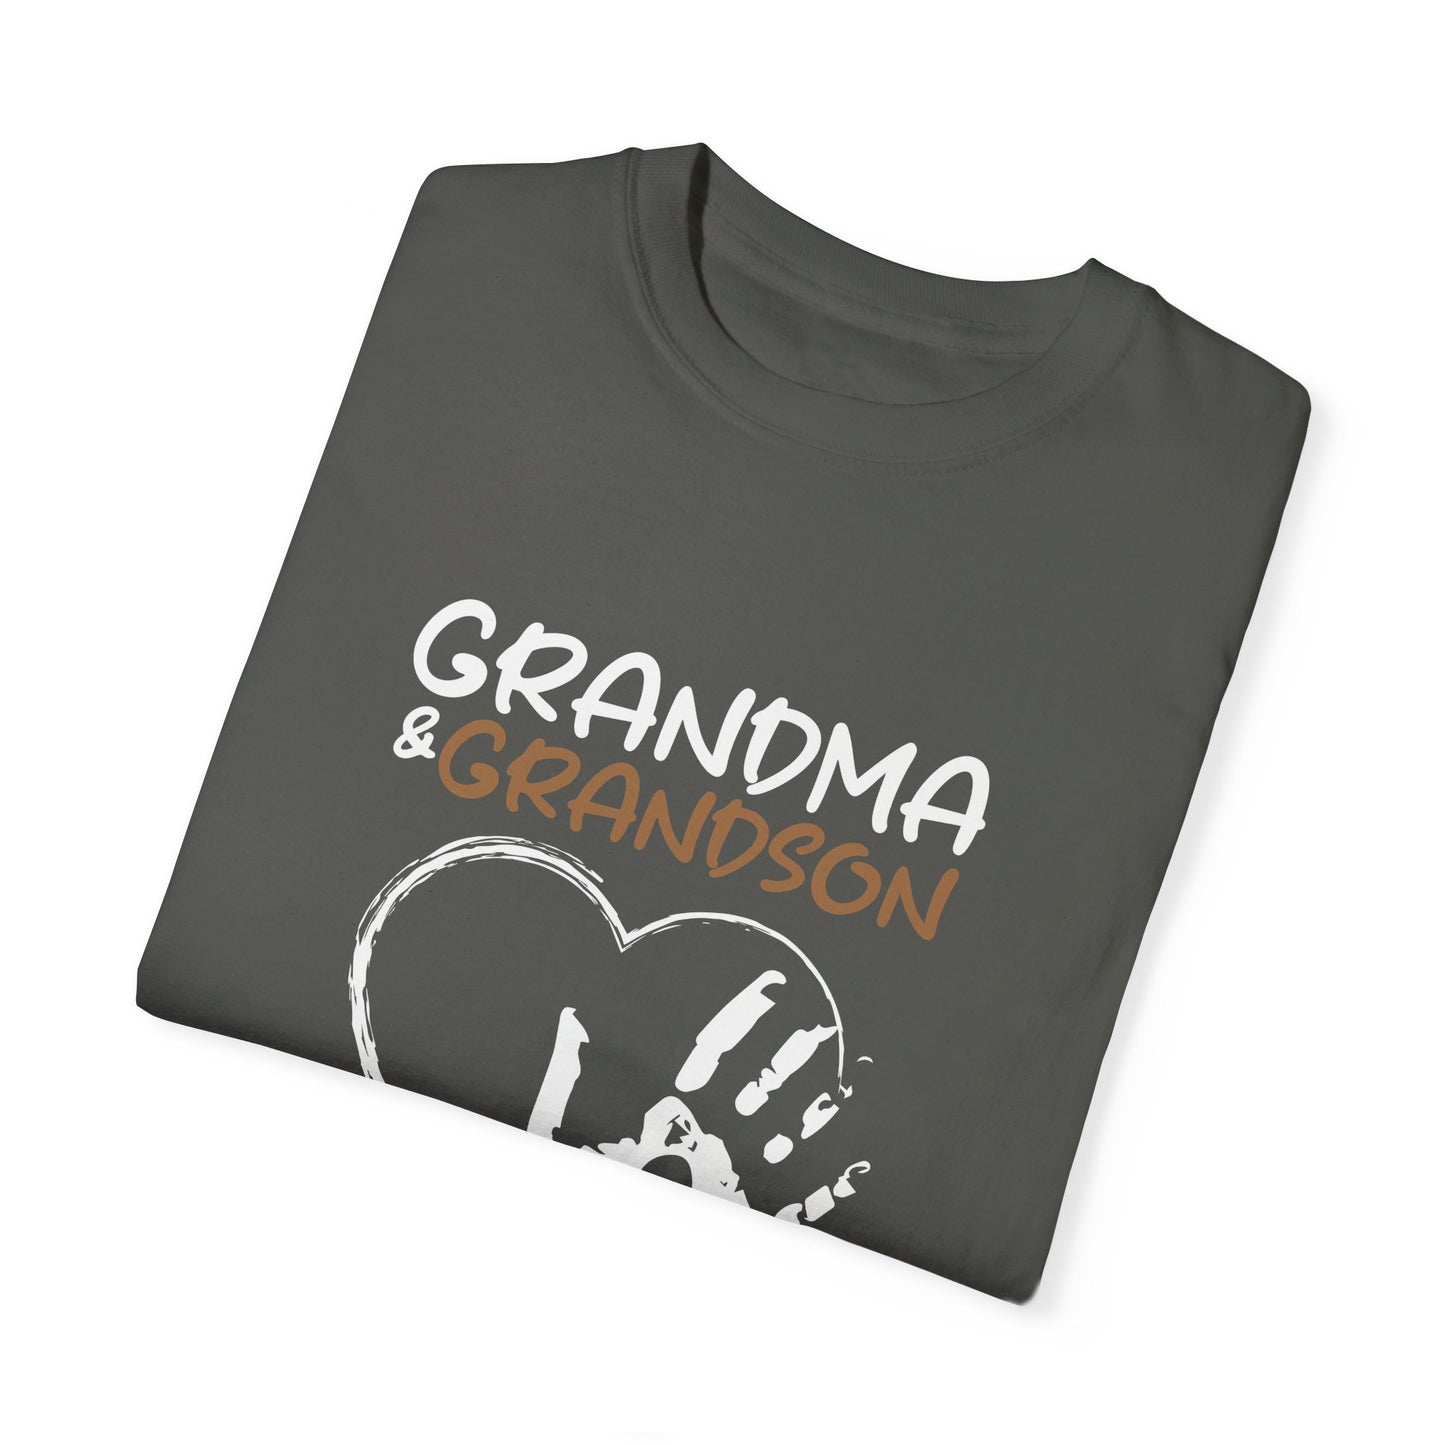 For Grandma & Grandson | Unisex Garment-Dyed T-shirt